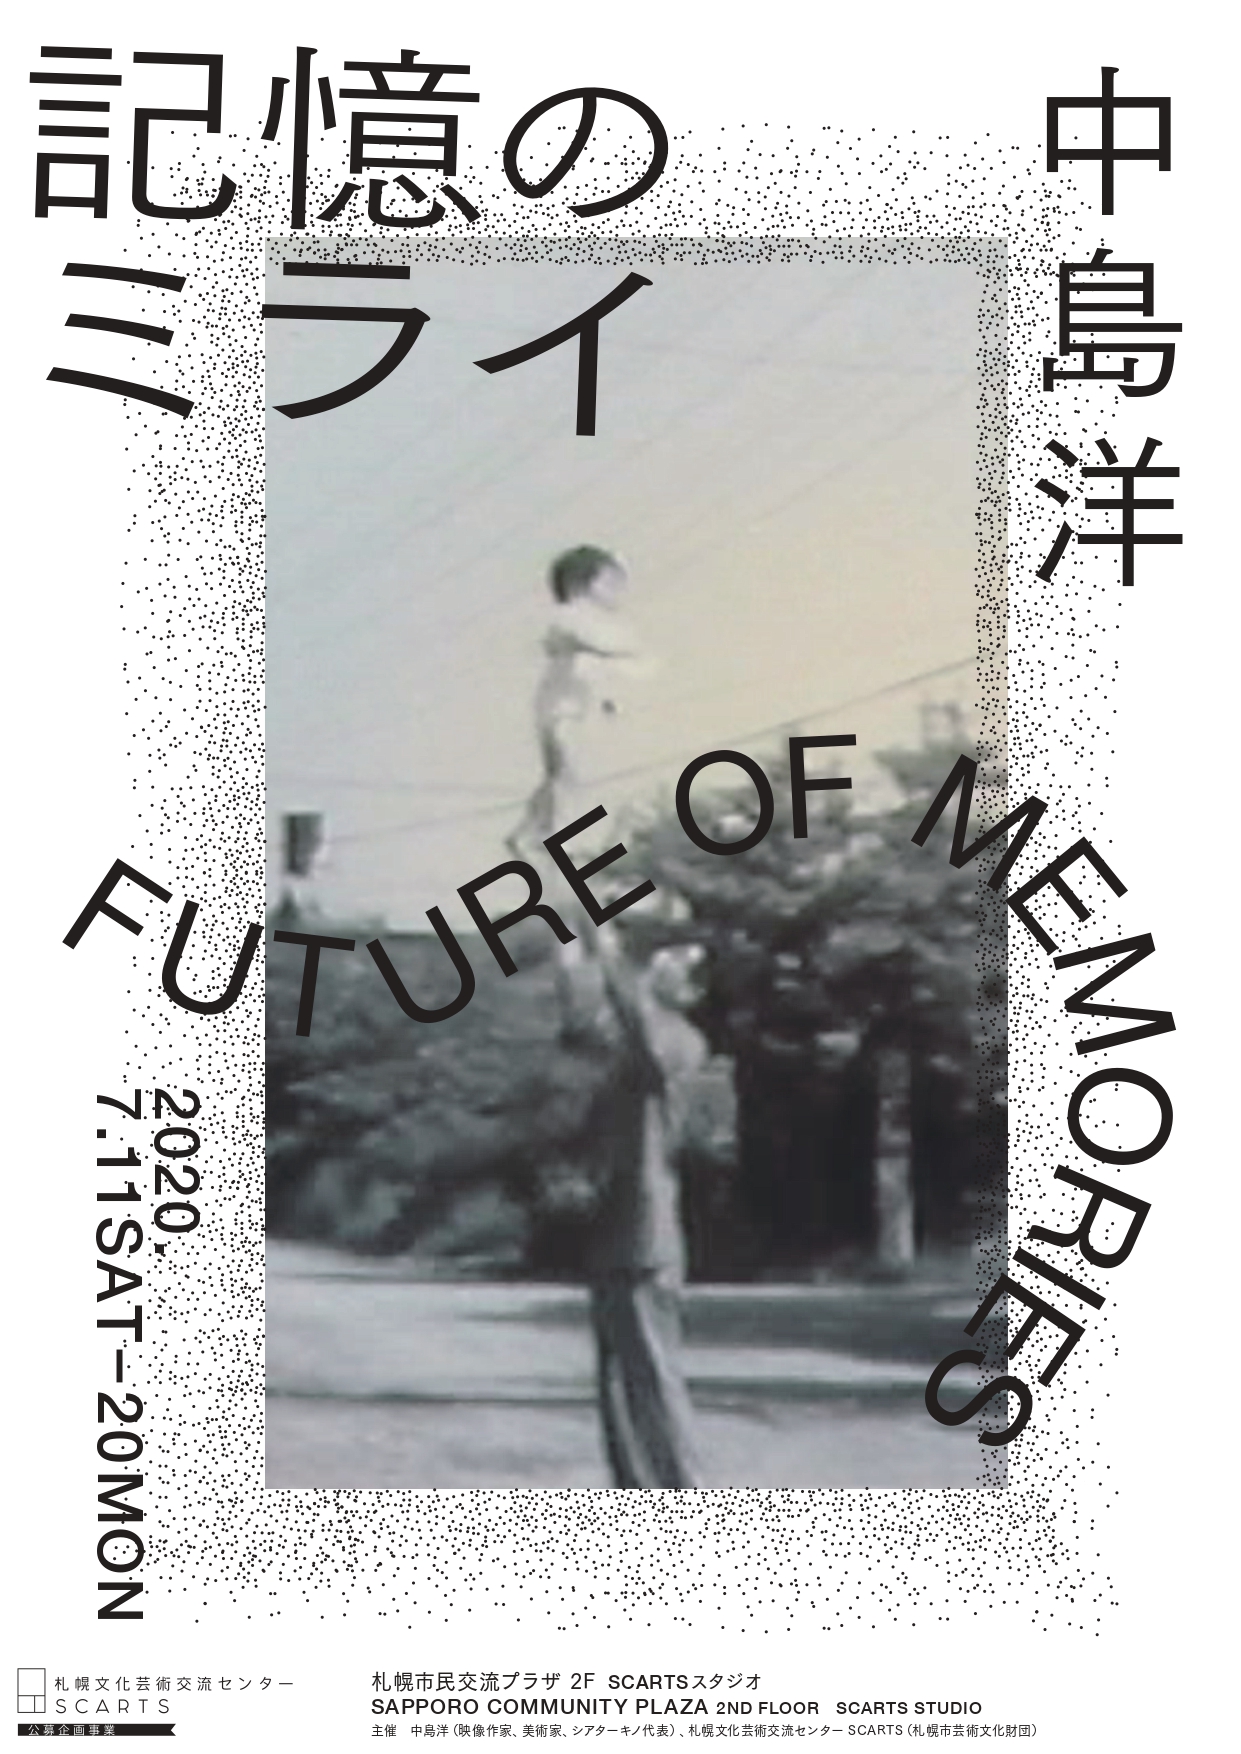 中島洋　市民参加型アートプロジェクト「記憶のミライ」のイメージ1枚目